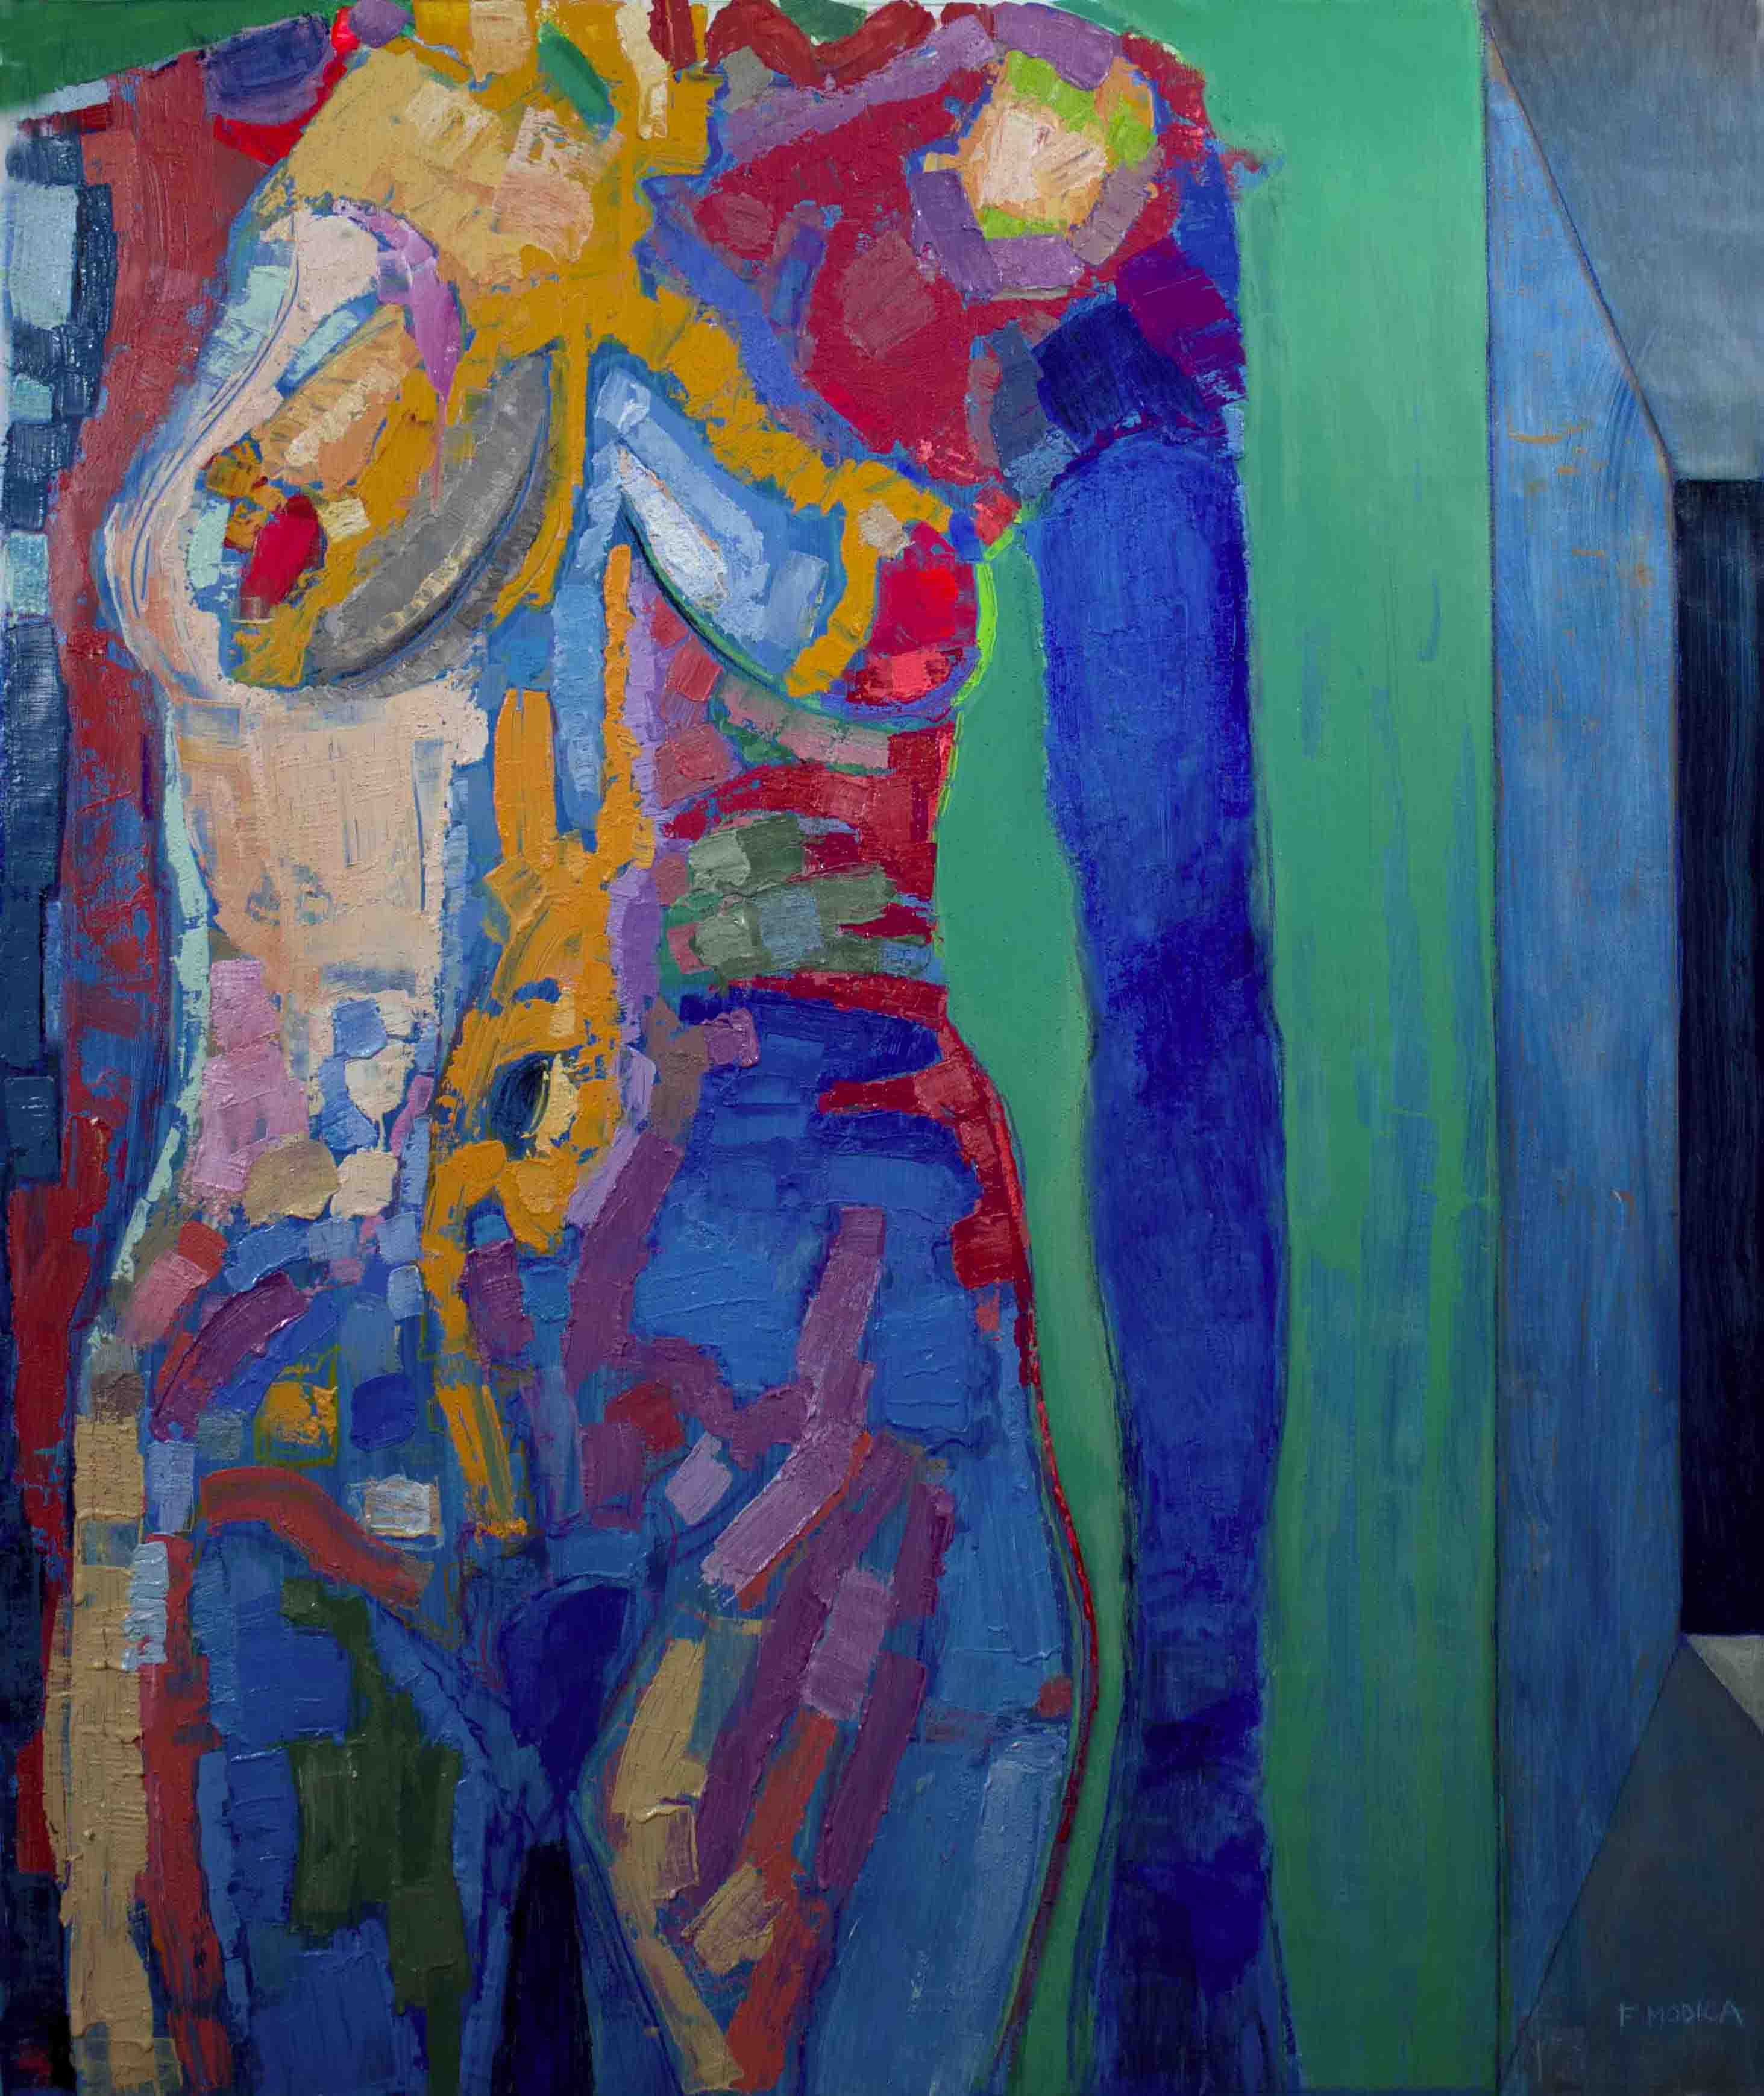 Nudo con guanto blu - mixed media on canvas - cm 180x150 | 71'x59' - 2013